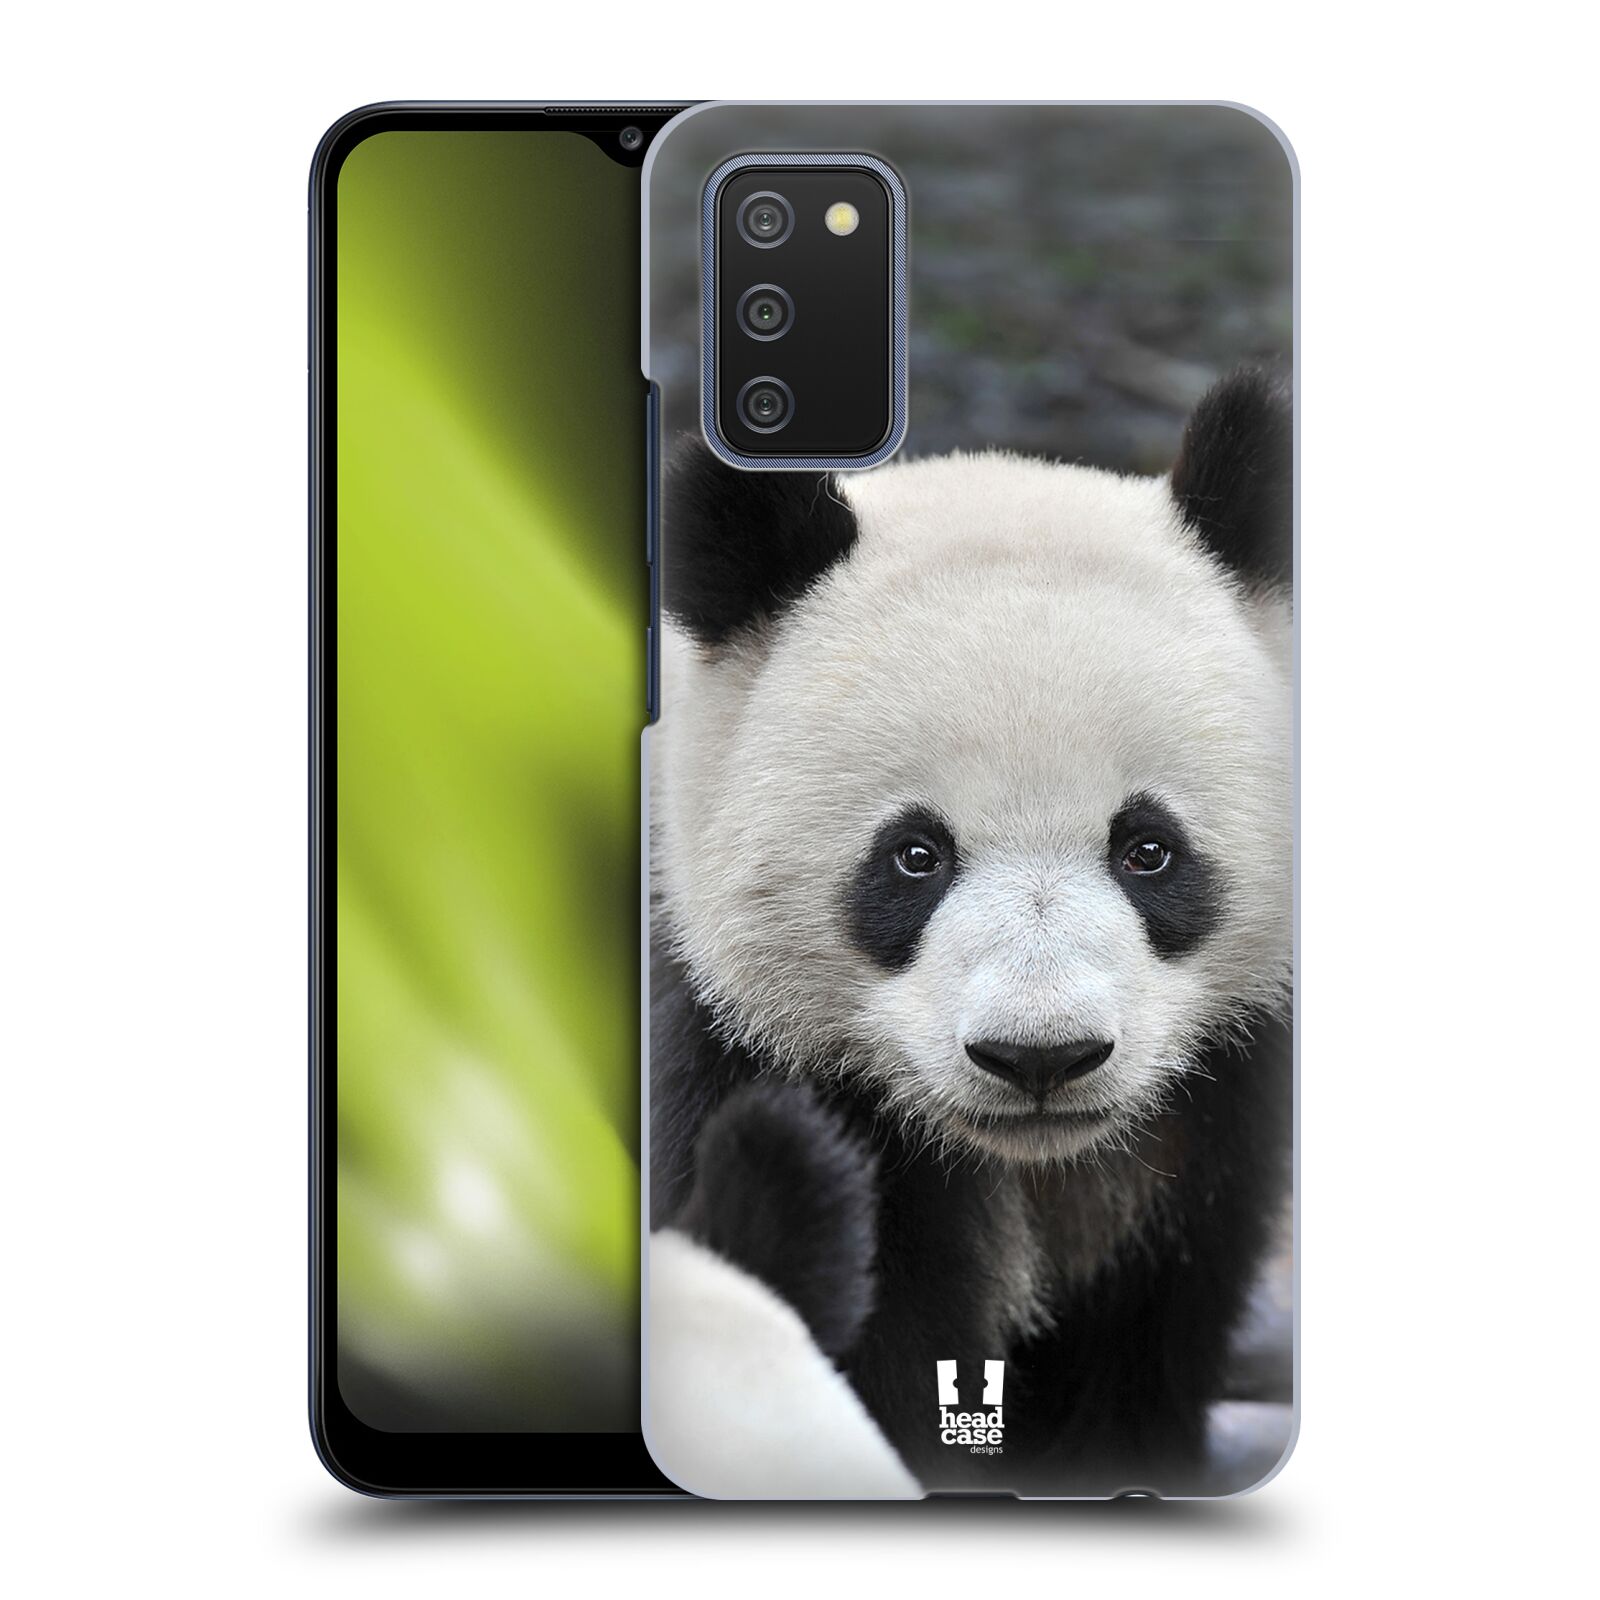 Zadní obal pro mobil Samsung Galaxy A02s / A03s - HEAD CASE - Svět zvířat medvěd panda